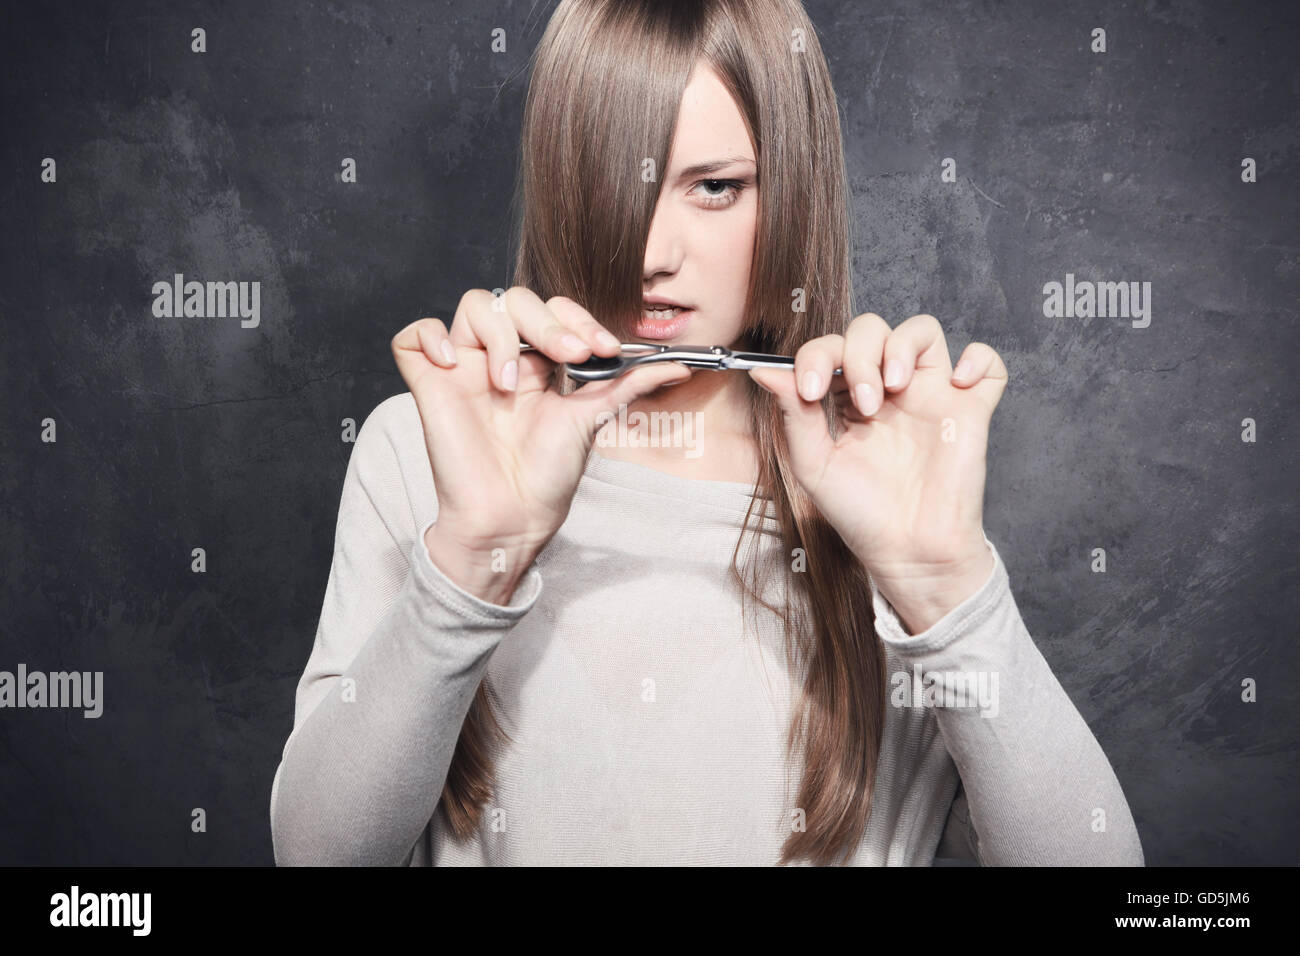 Girl with scissors Stock Photo